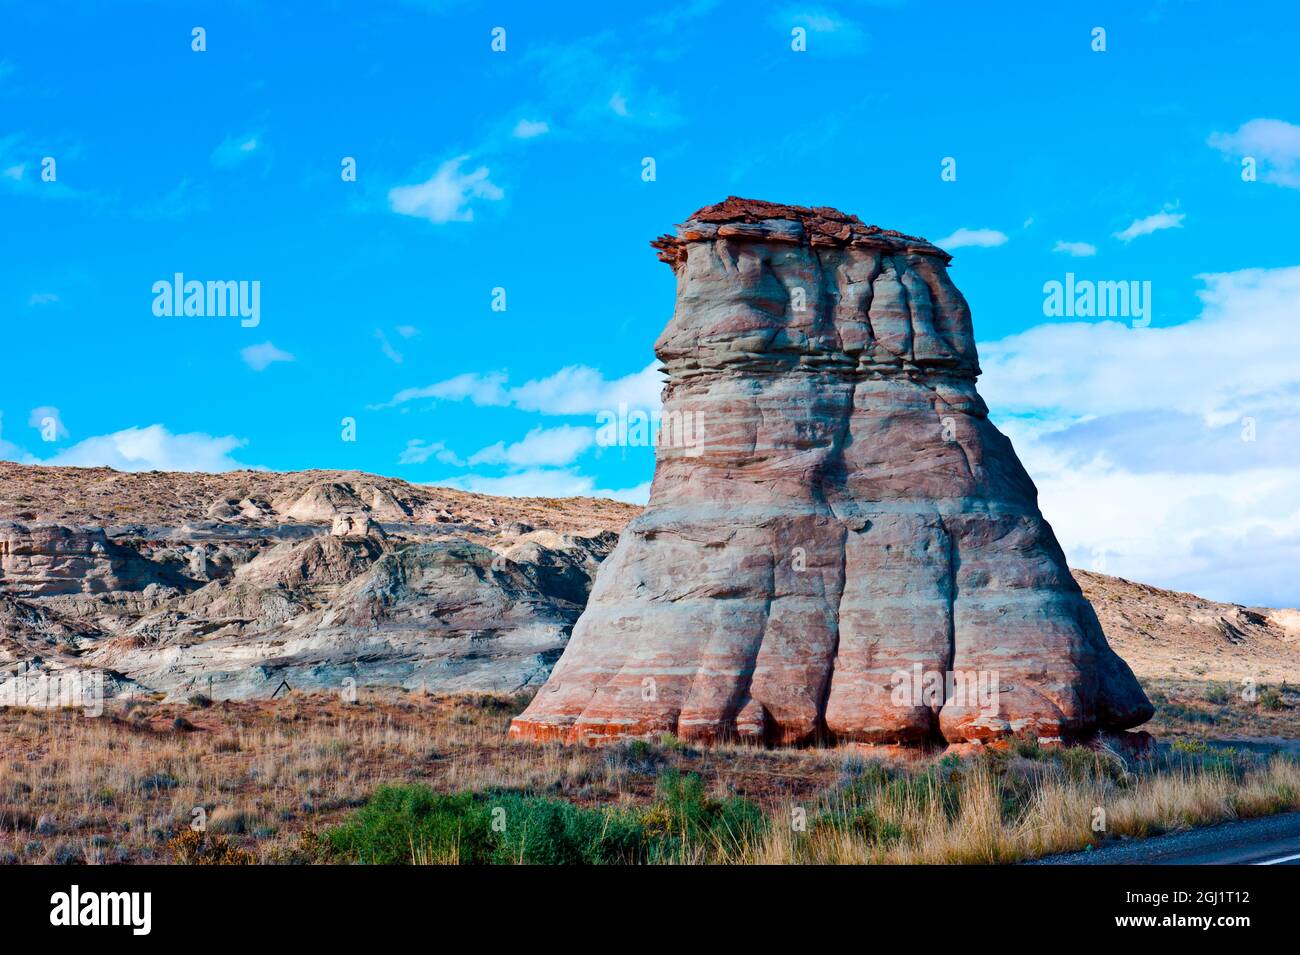 USA, Arizona, Tonalea. Elephant's Foot. Stock Photo